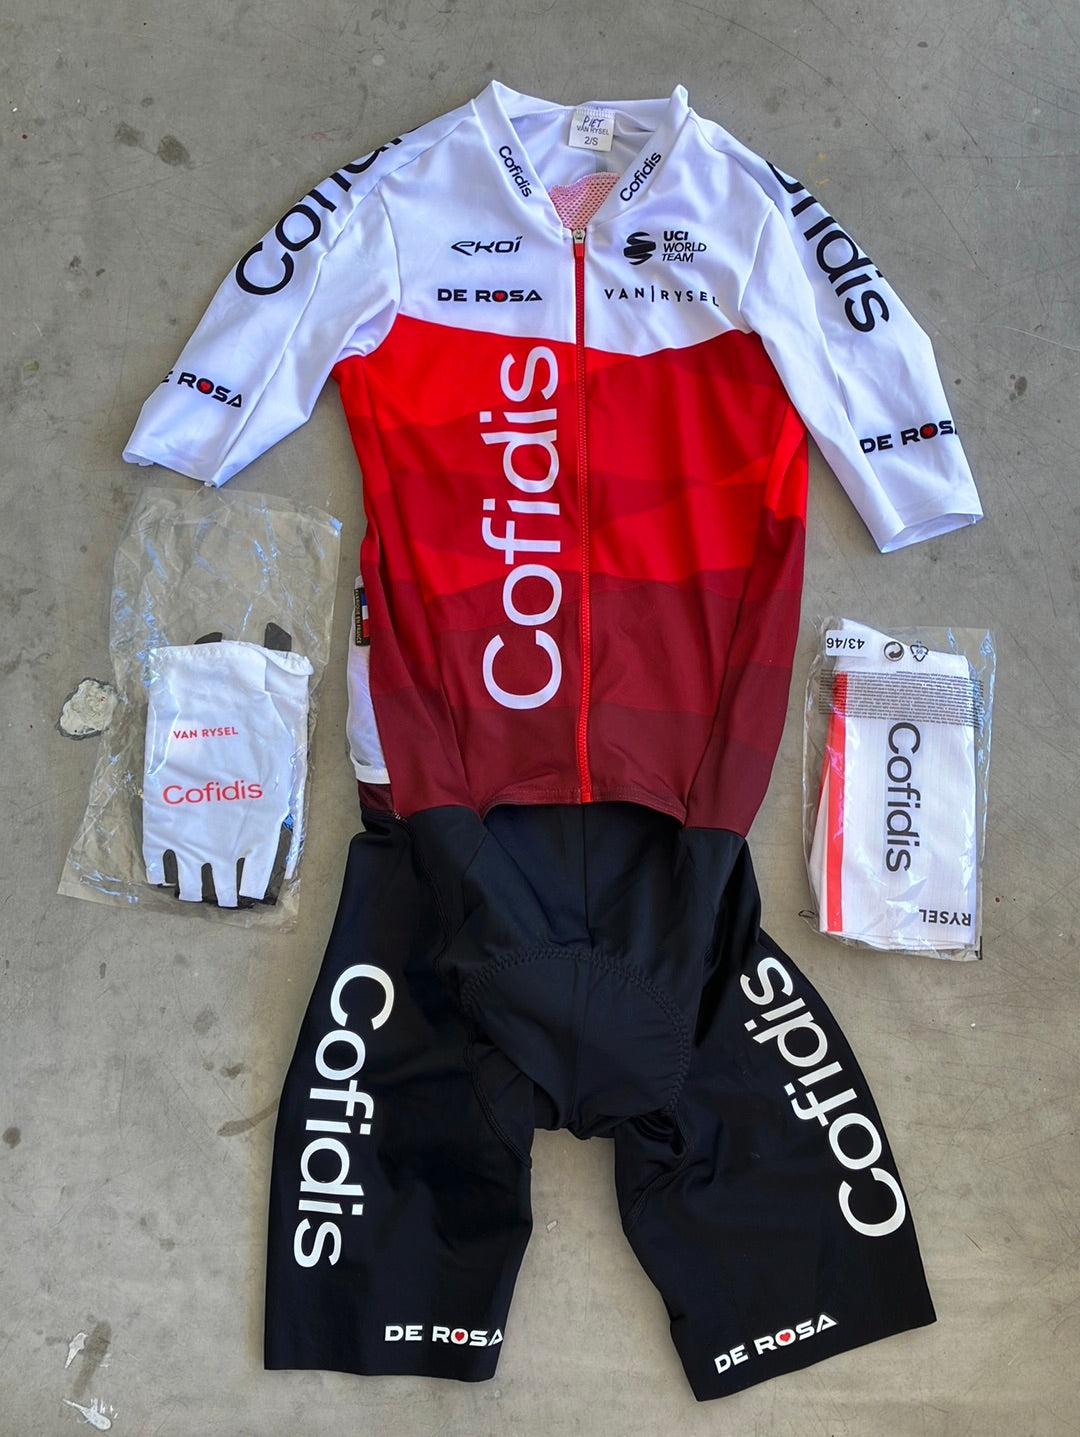 Cofidis | Van Rysel Bundle - Race Suit, Aero Socks & Gloves | Pro-Issued Pro Team Kit